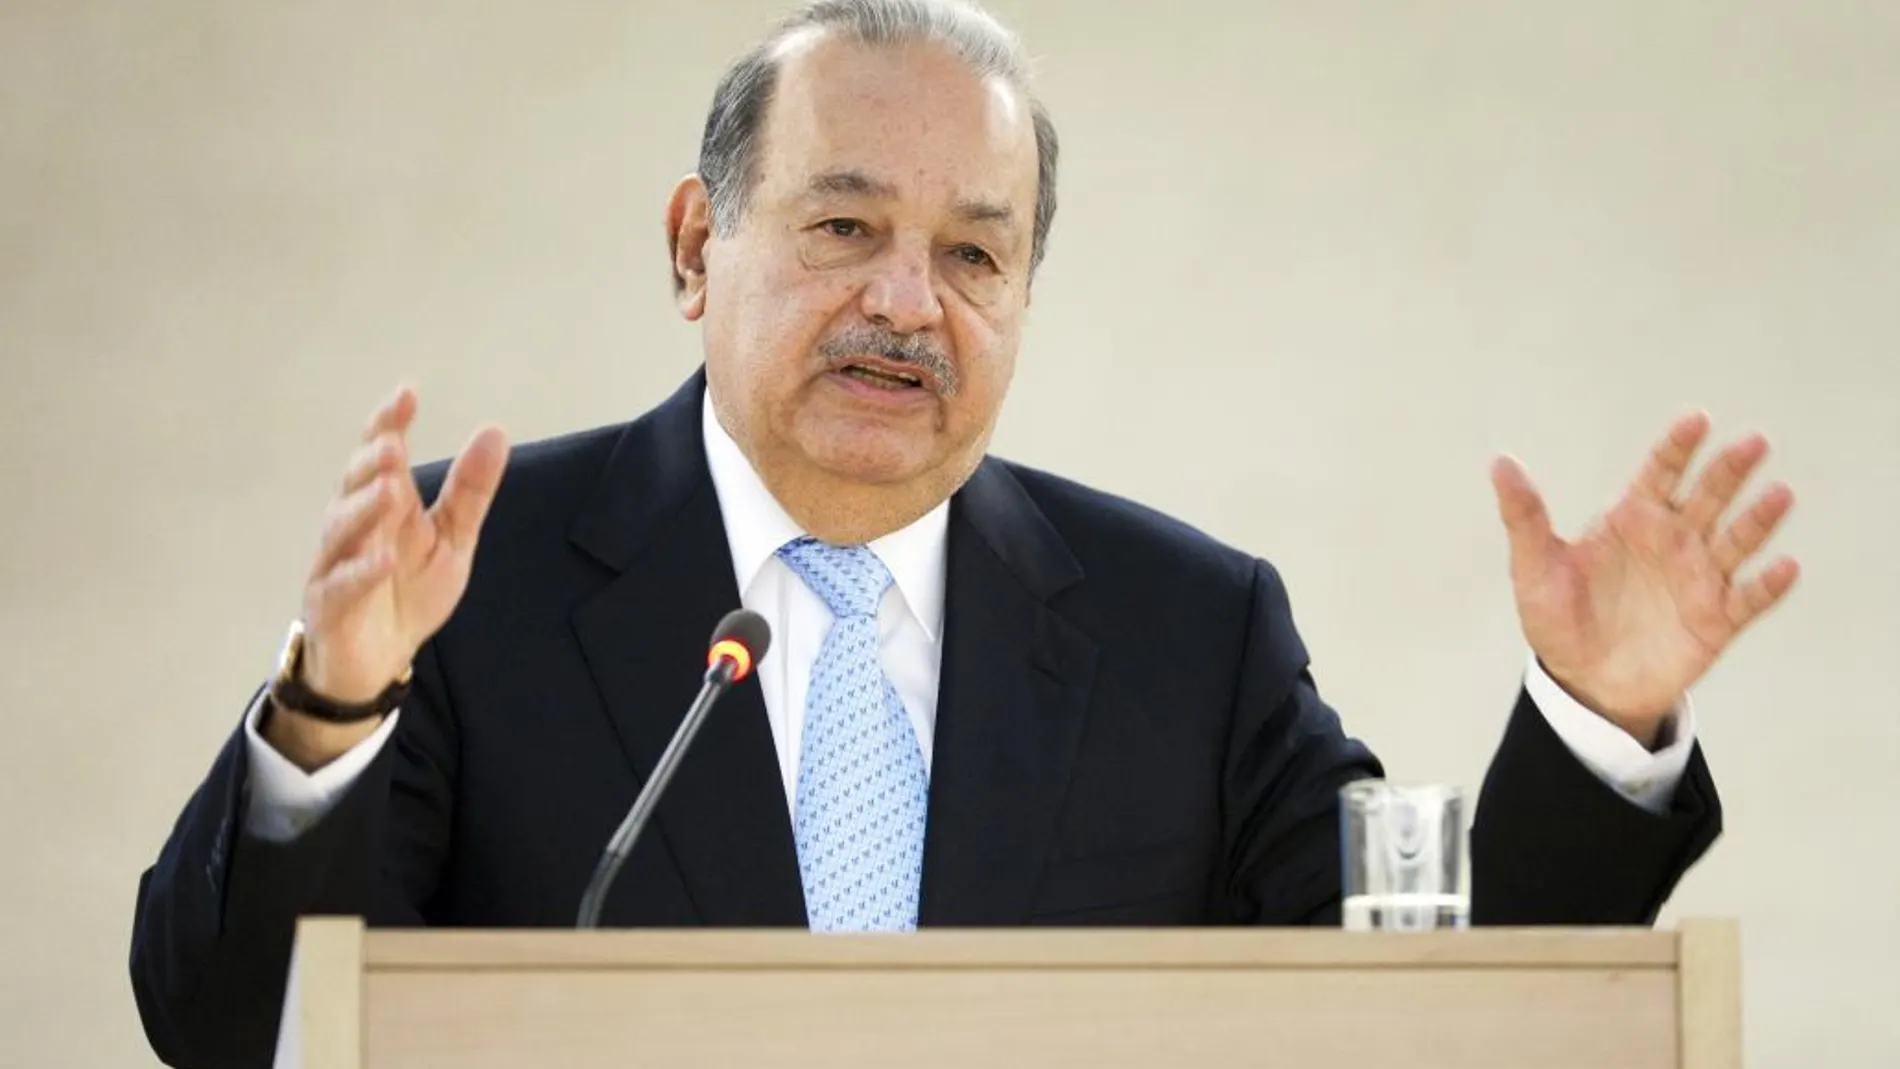 El empresario mexicano Carlos Slim